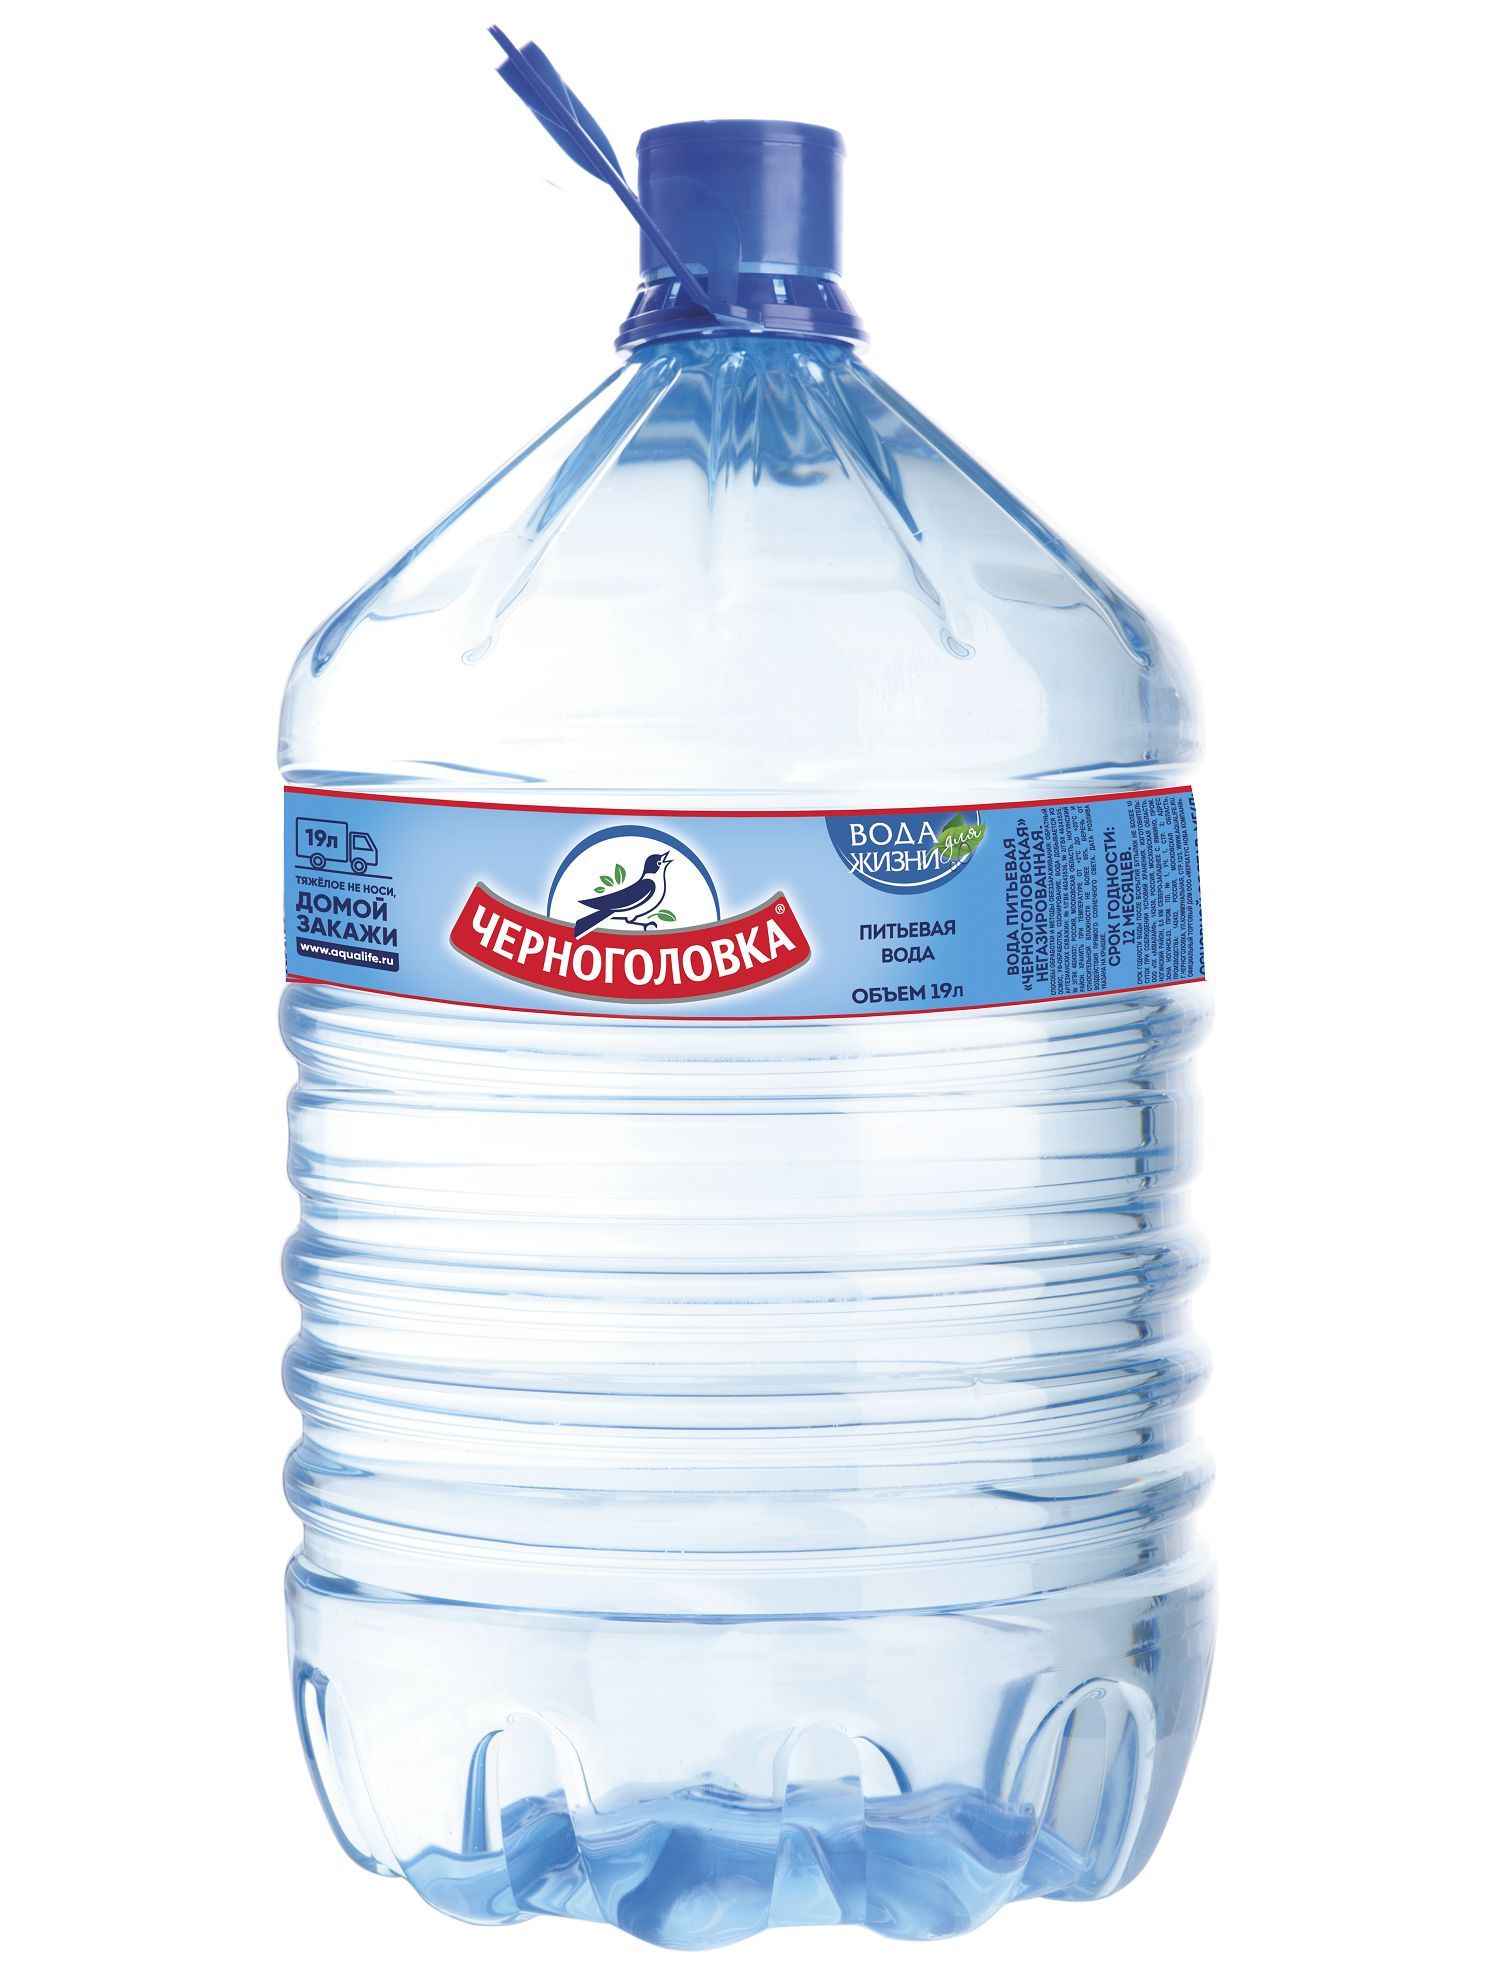 Вода «Черноголовская» в одноразовой таре 19 литров